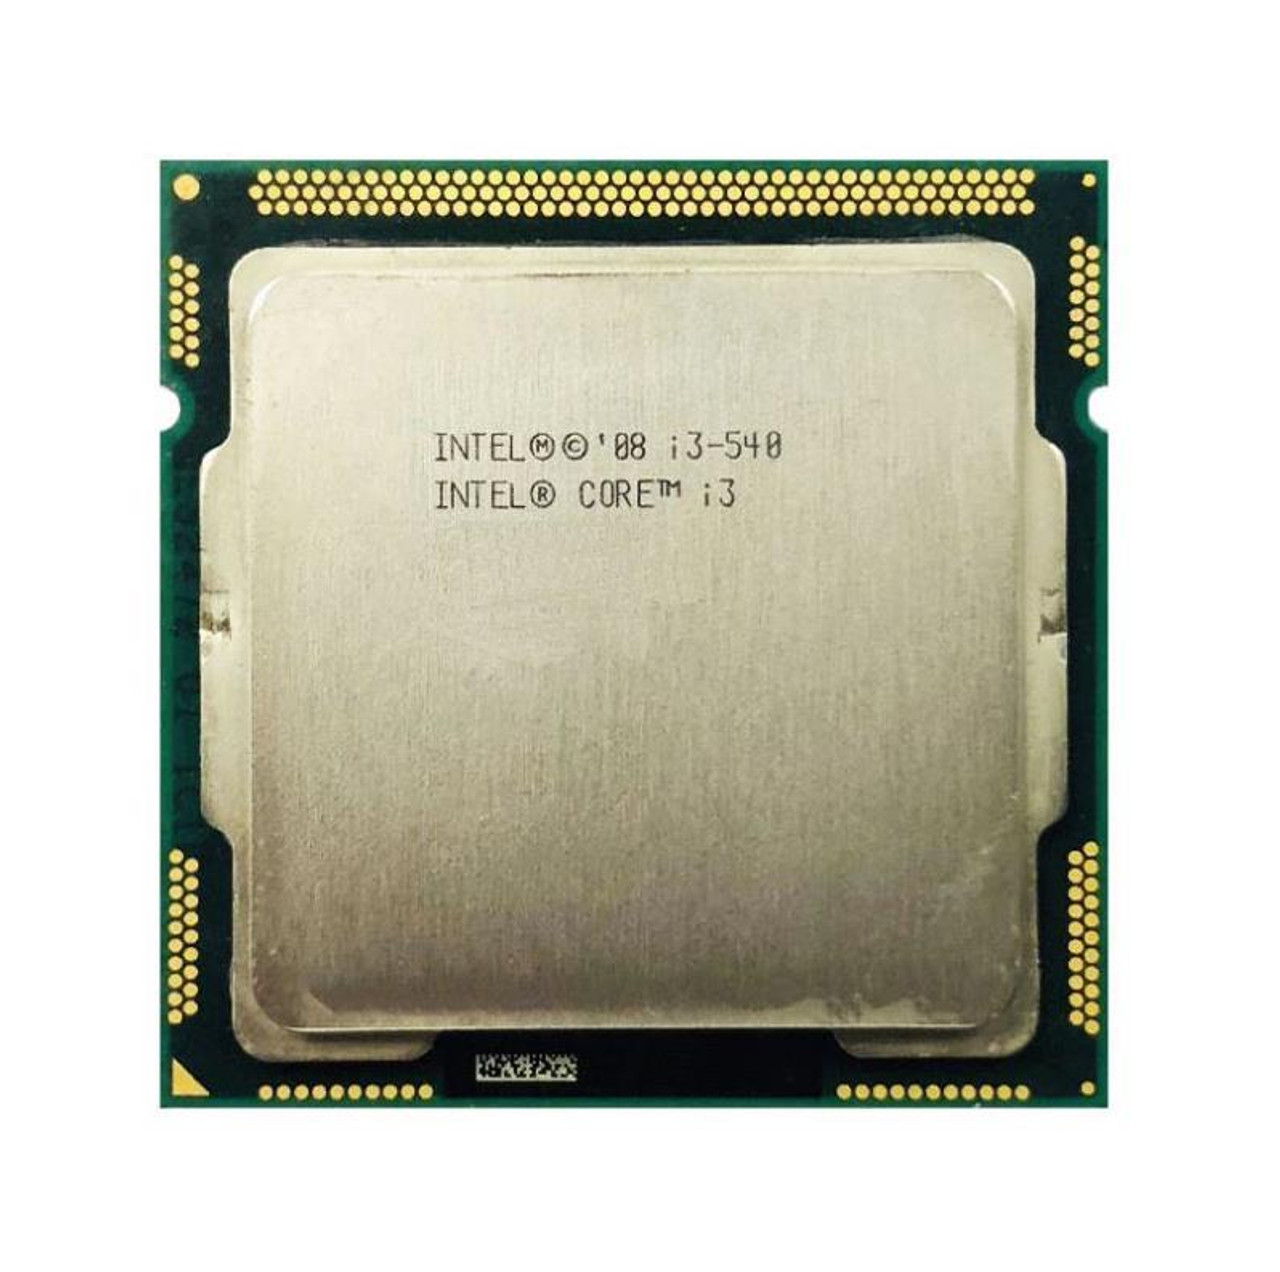 Dell 3.06GHz 2.50GT/s DMI 4MB L3 Cache Intel Core i3-540 Dual-Core Processor Upgrade